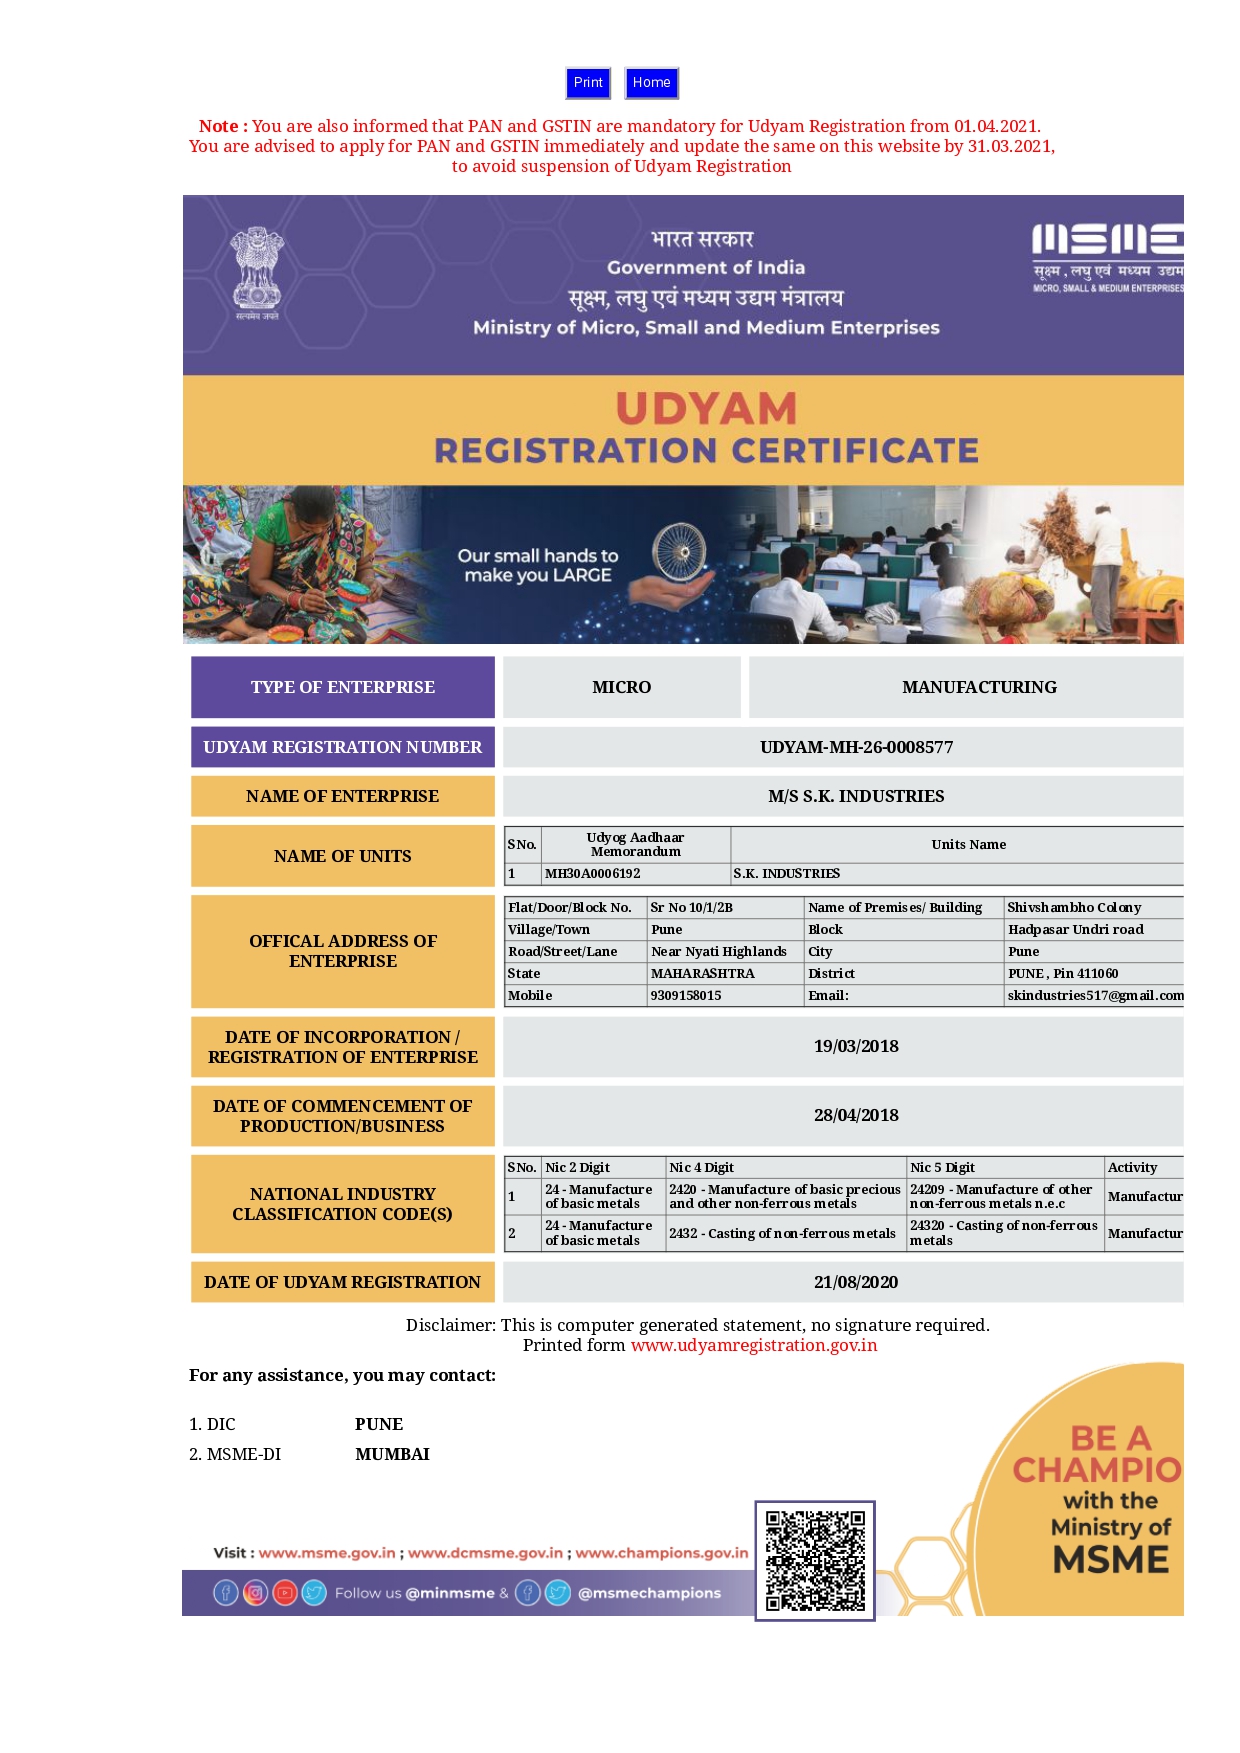 SK Industriies - Udyam Certificate